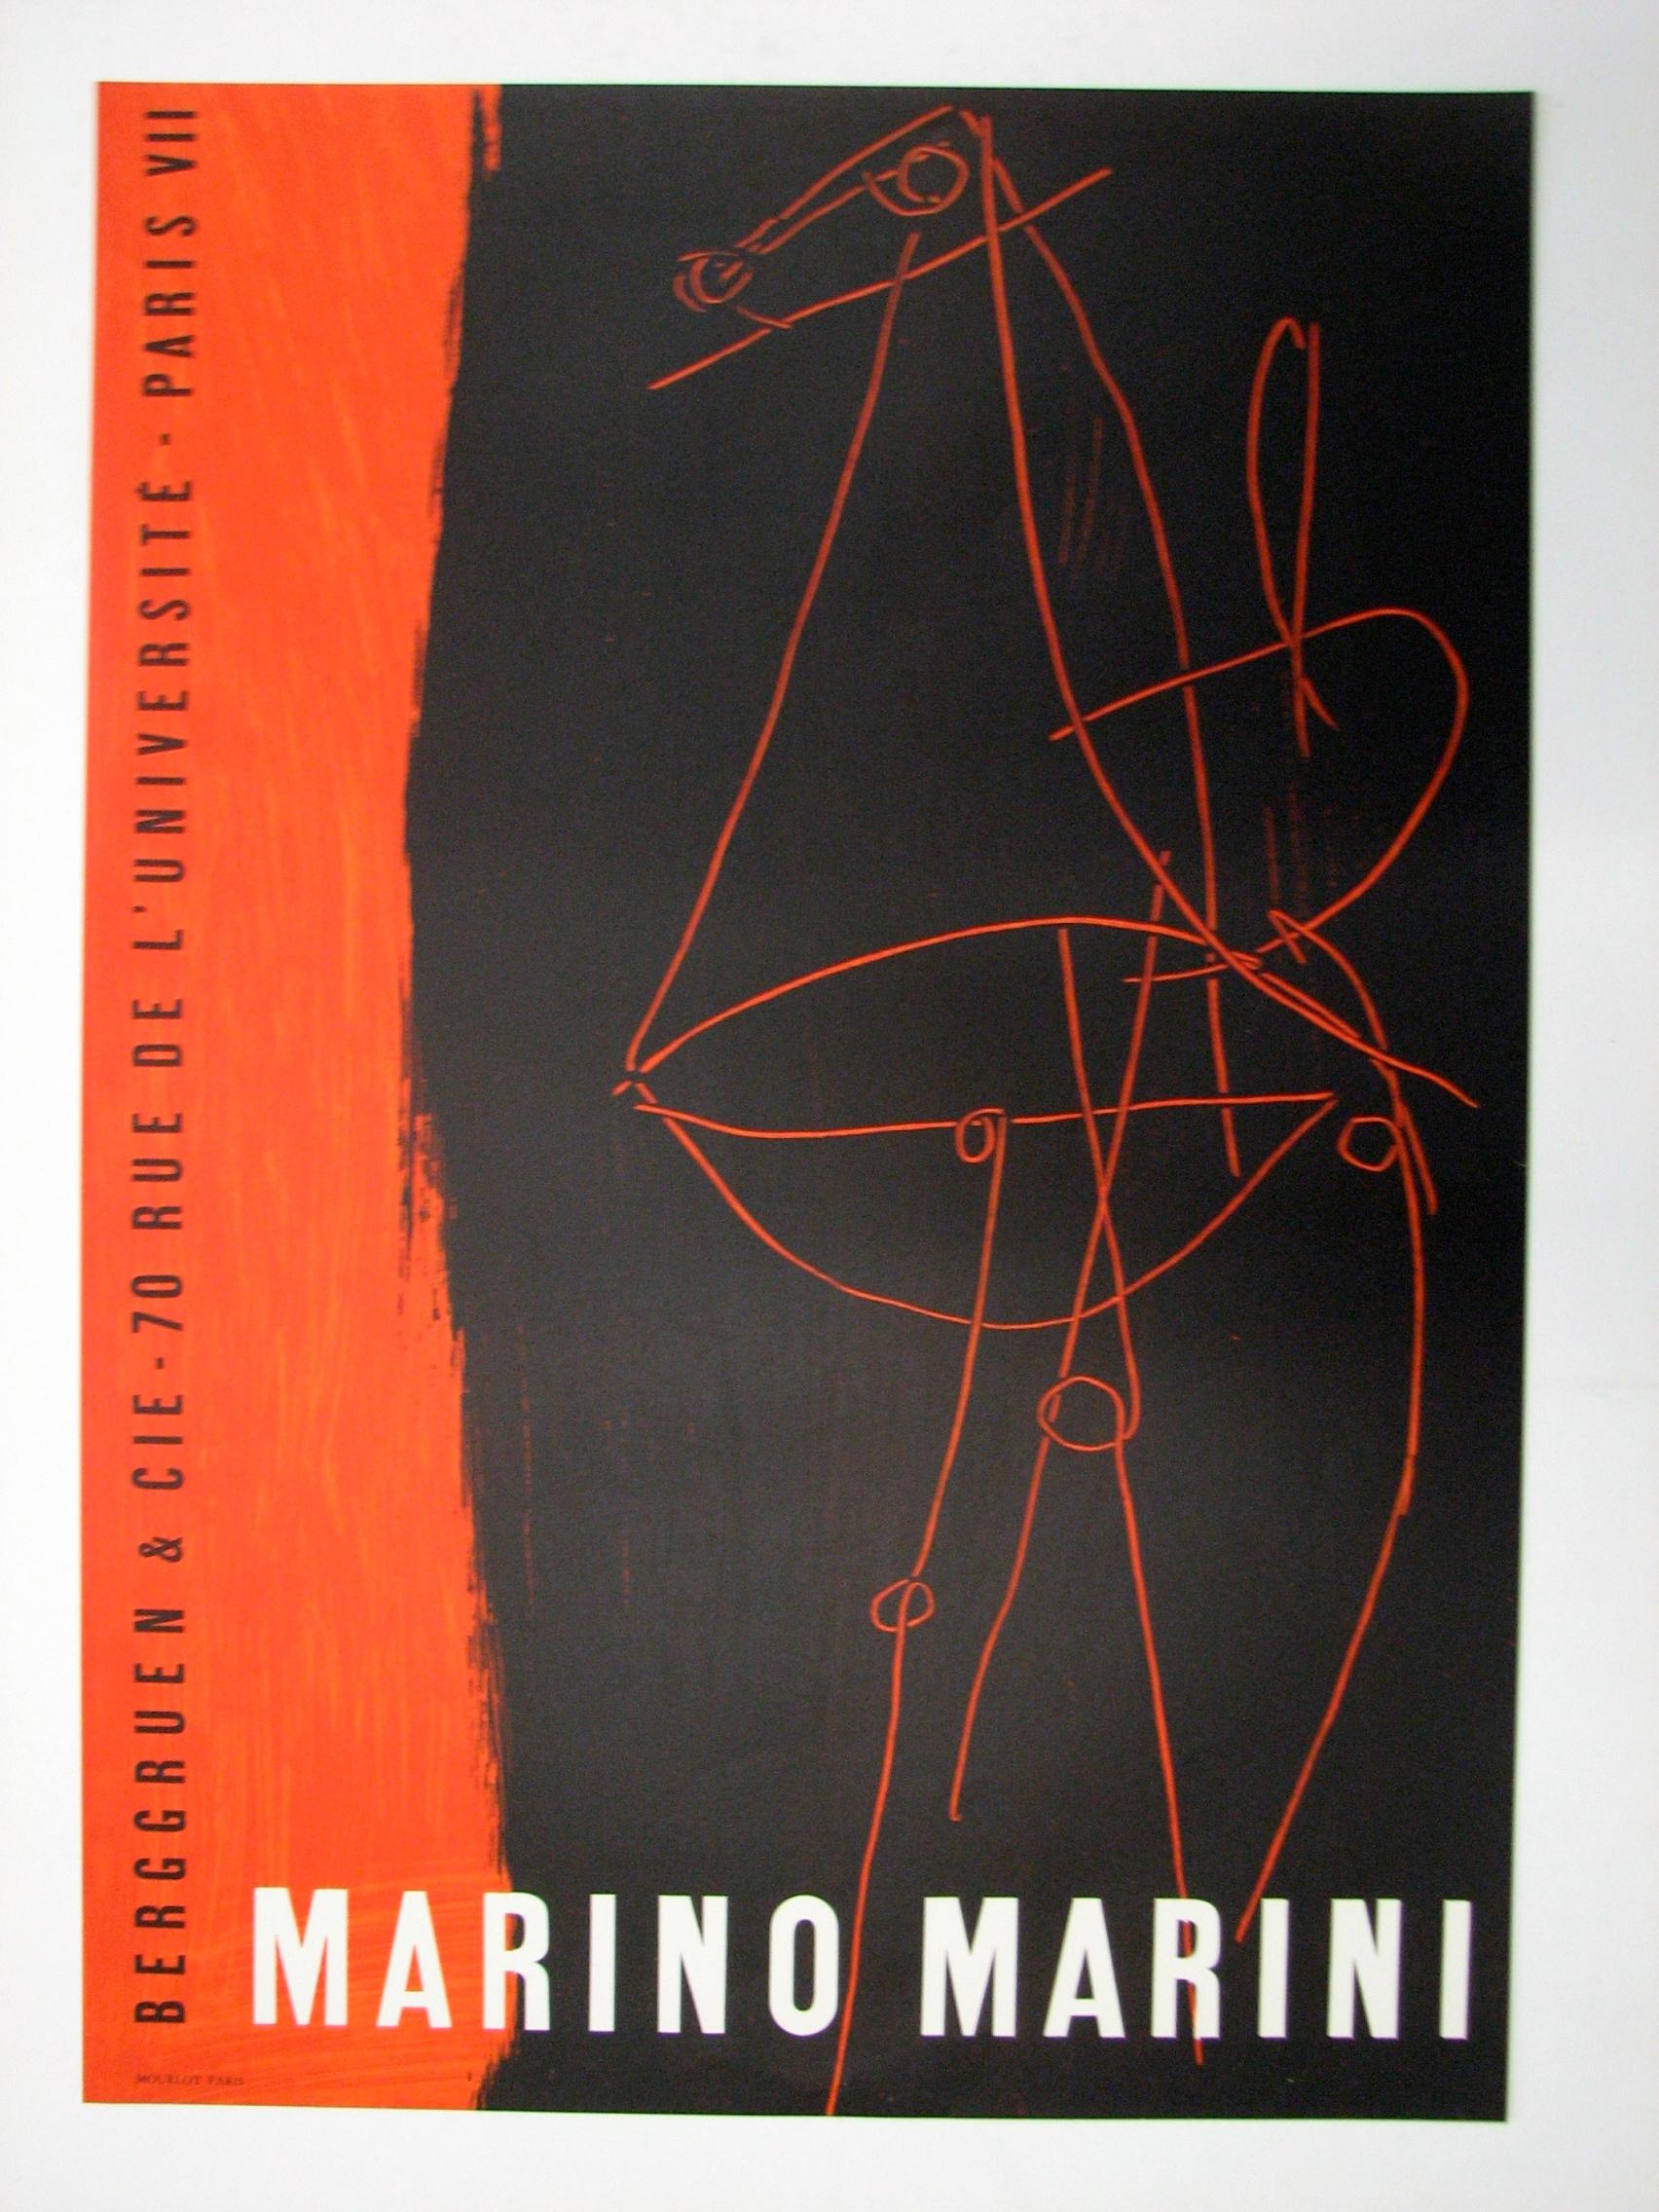 Komposition - BERGGRUEN UND CIE, 1955 von Marino Marini, 1955